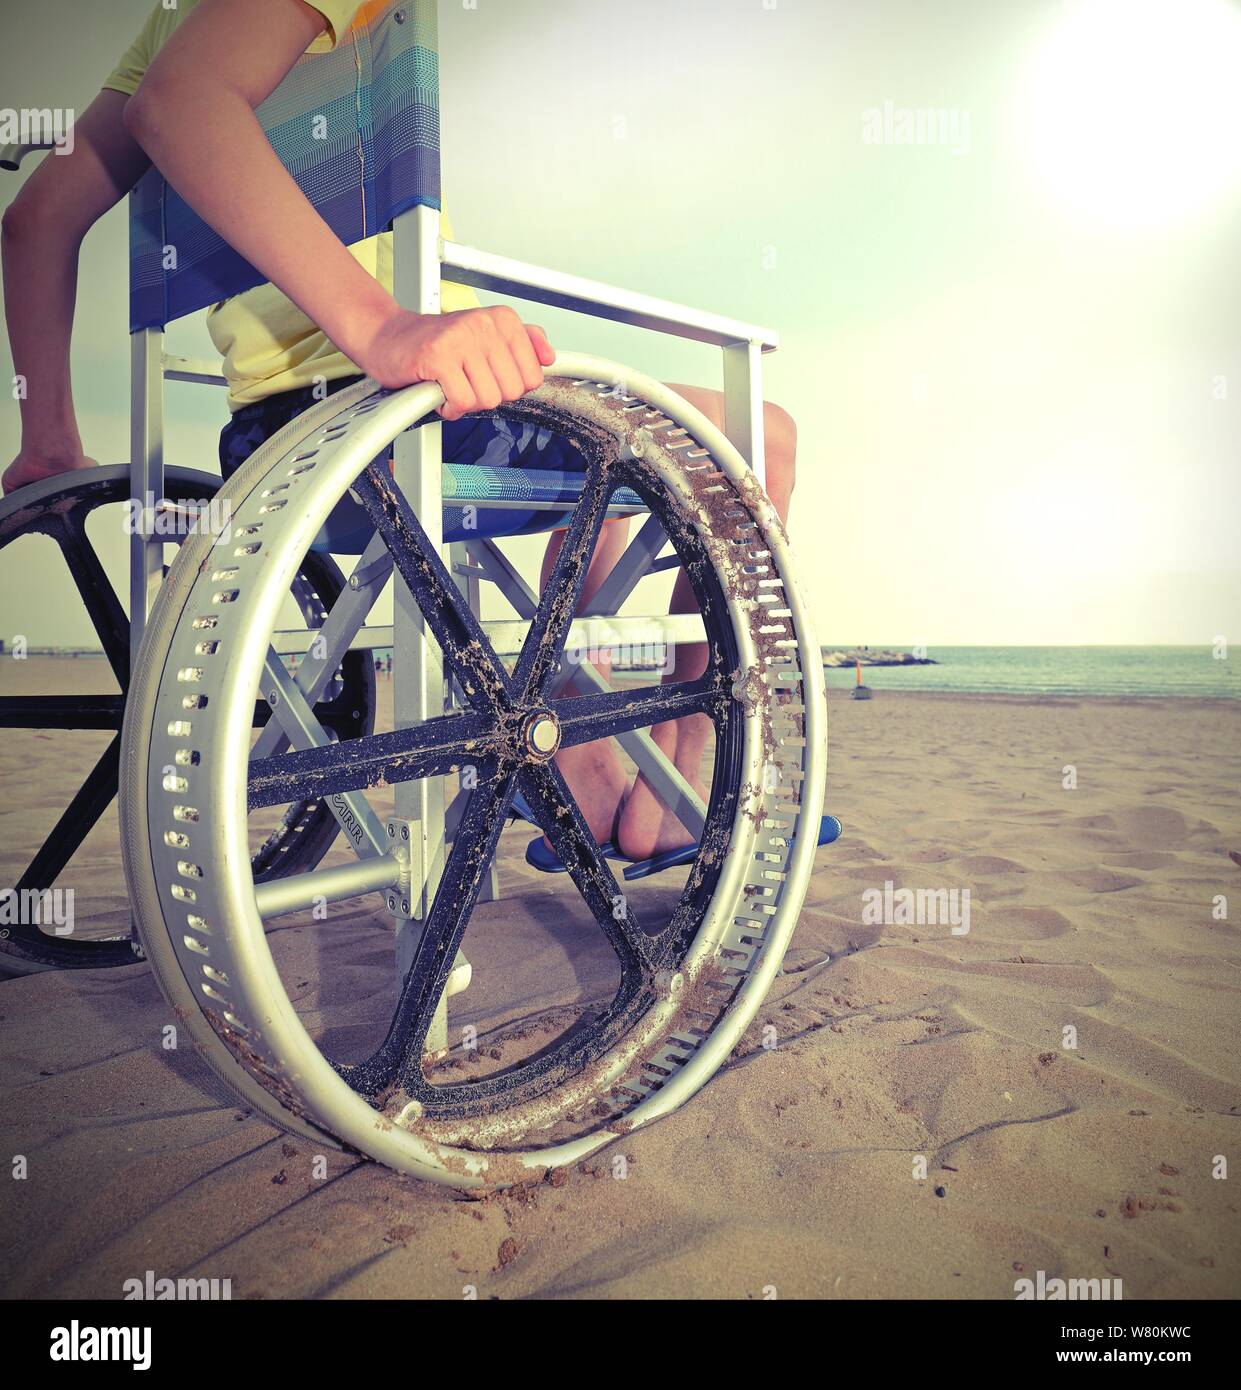 Dettaglio di una sedia a rotelle speciale con molto grandi ruote per spostarsi sulla spiaggia sabbiosa del resort con un ragazzo giovane Foto Stock